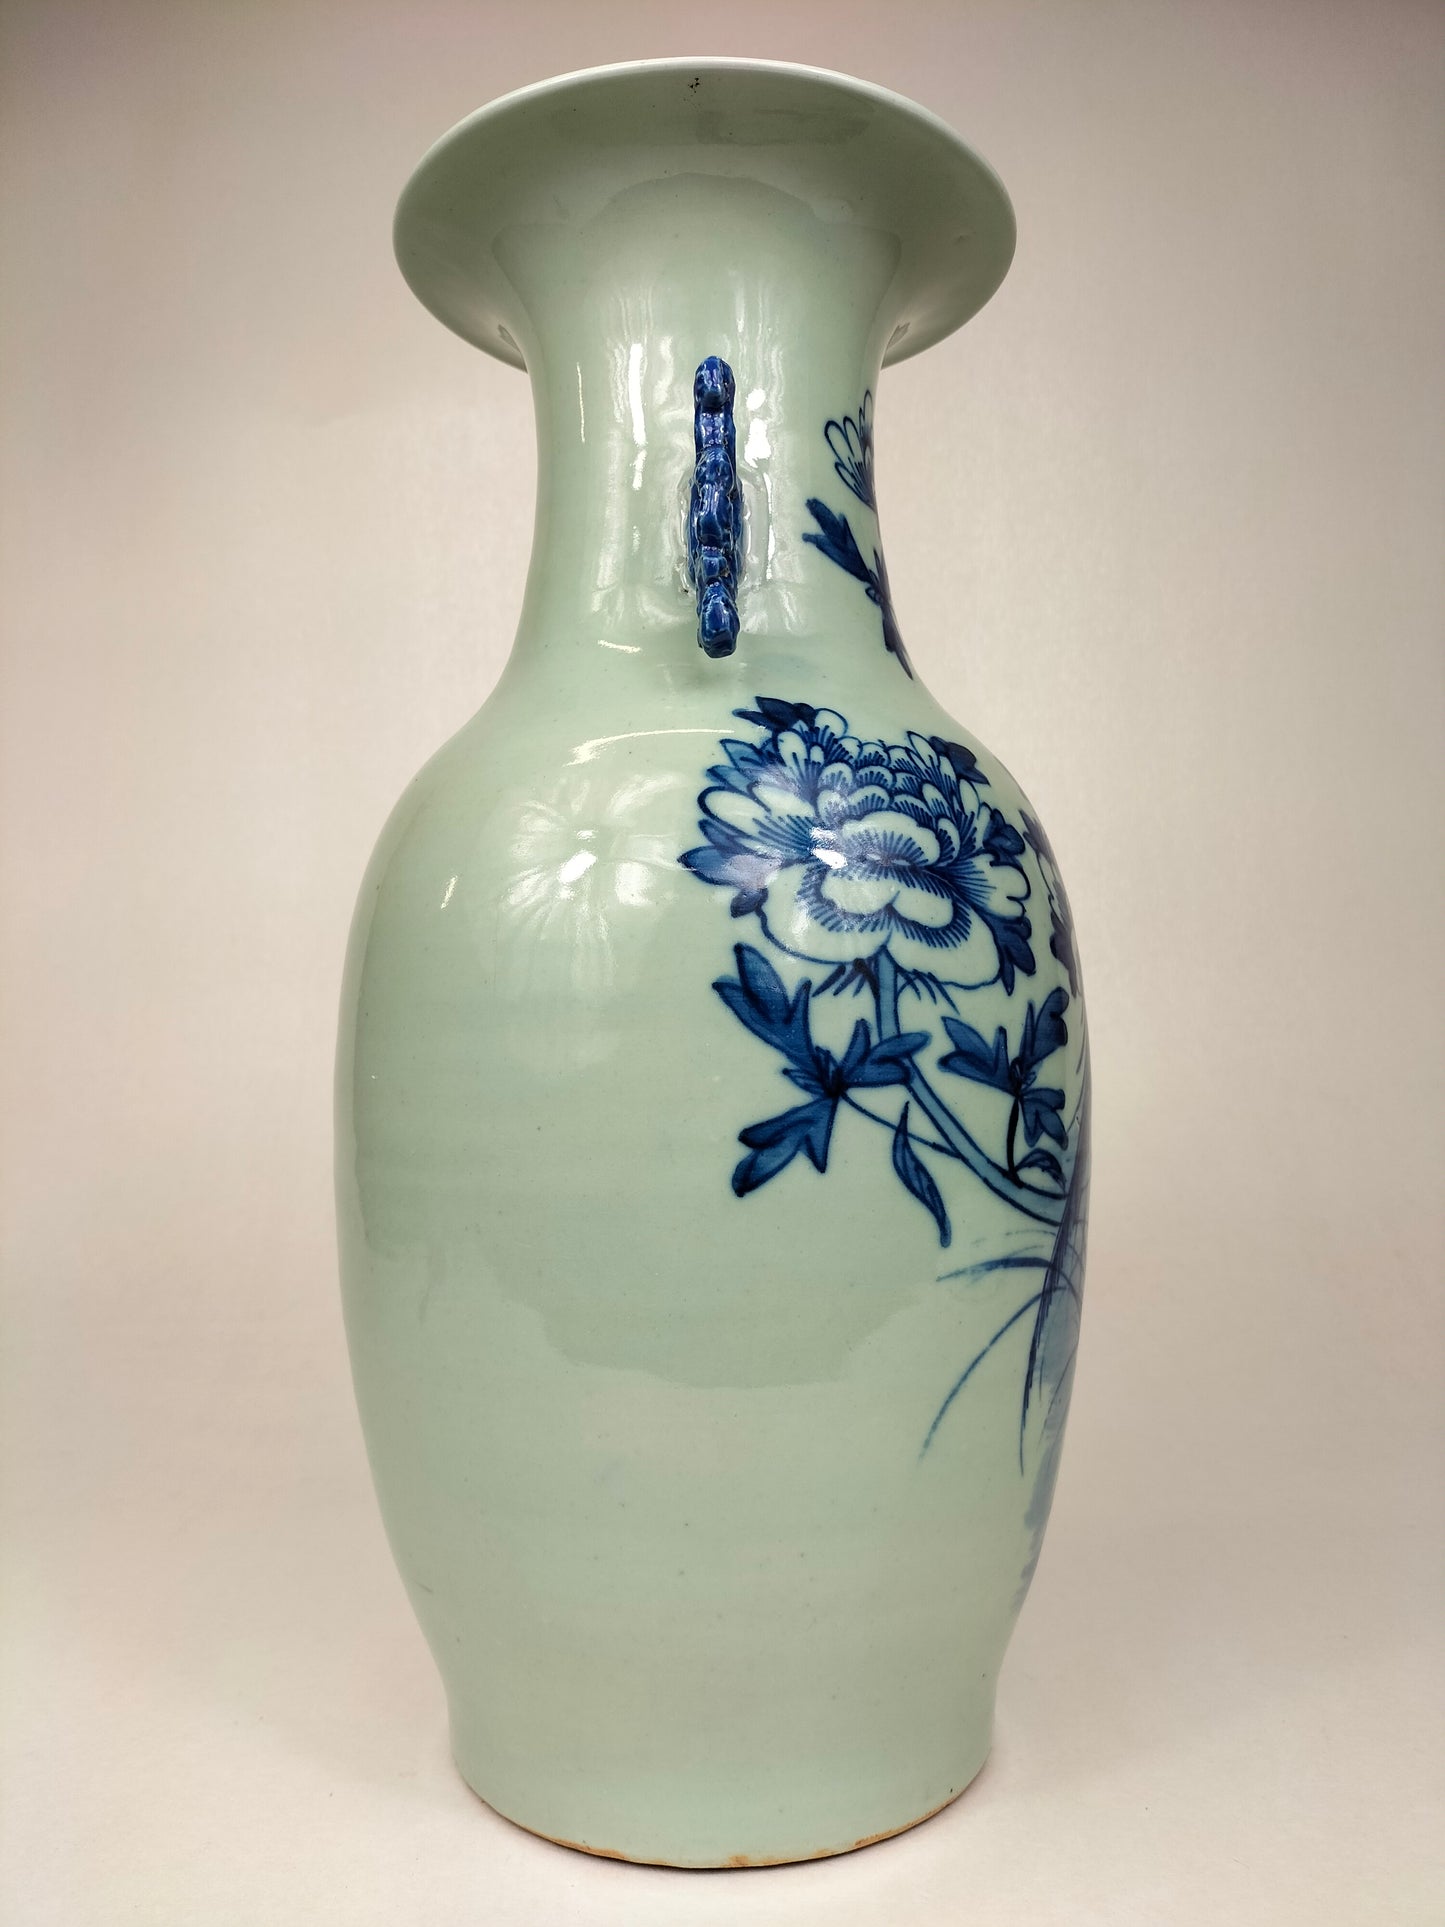 Chiếc bình cổ Trung Quốc được trang trí hình chim và hoa // Nhà Thanh - thế kỷ 19